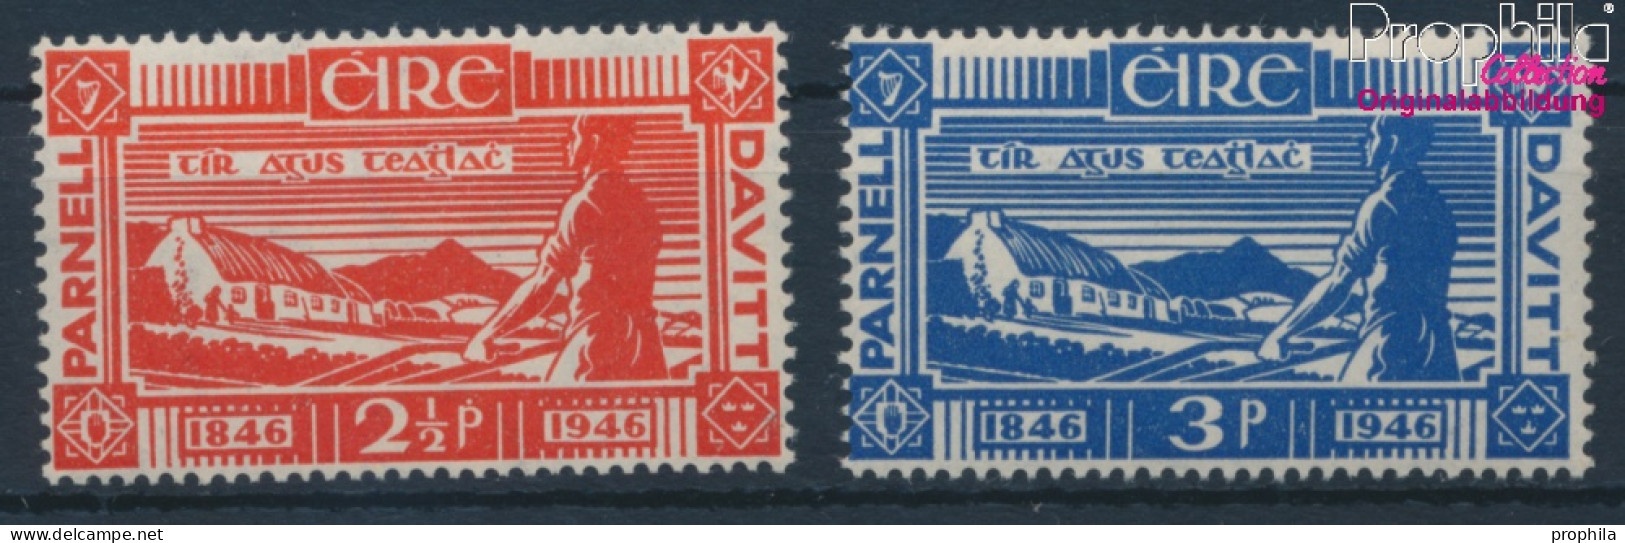 Irland Postfrisch Landreformer 1946 Landreformer  (10398335 - Ungebraucht